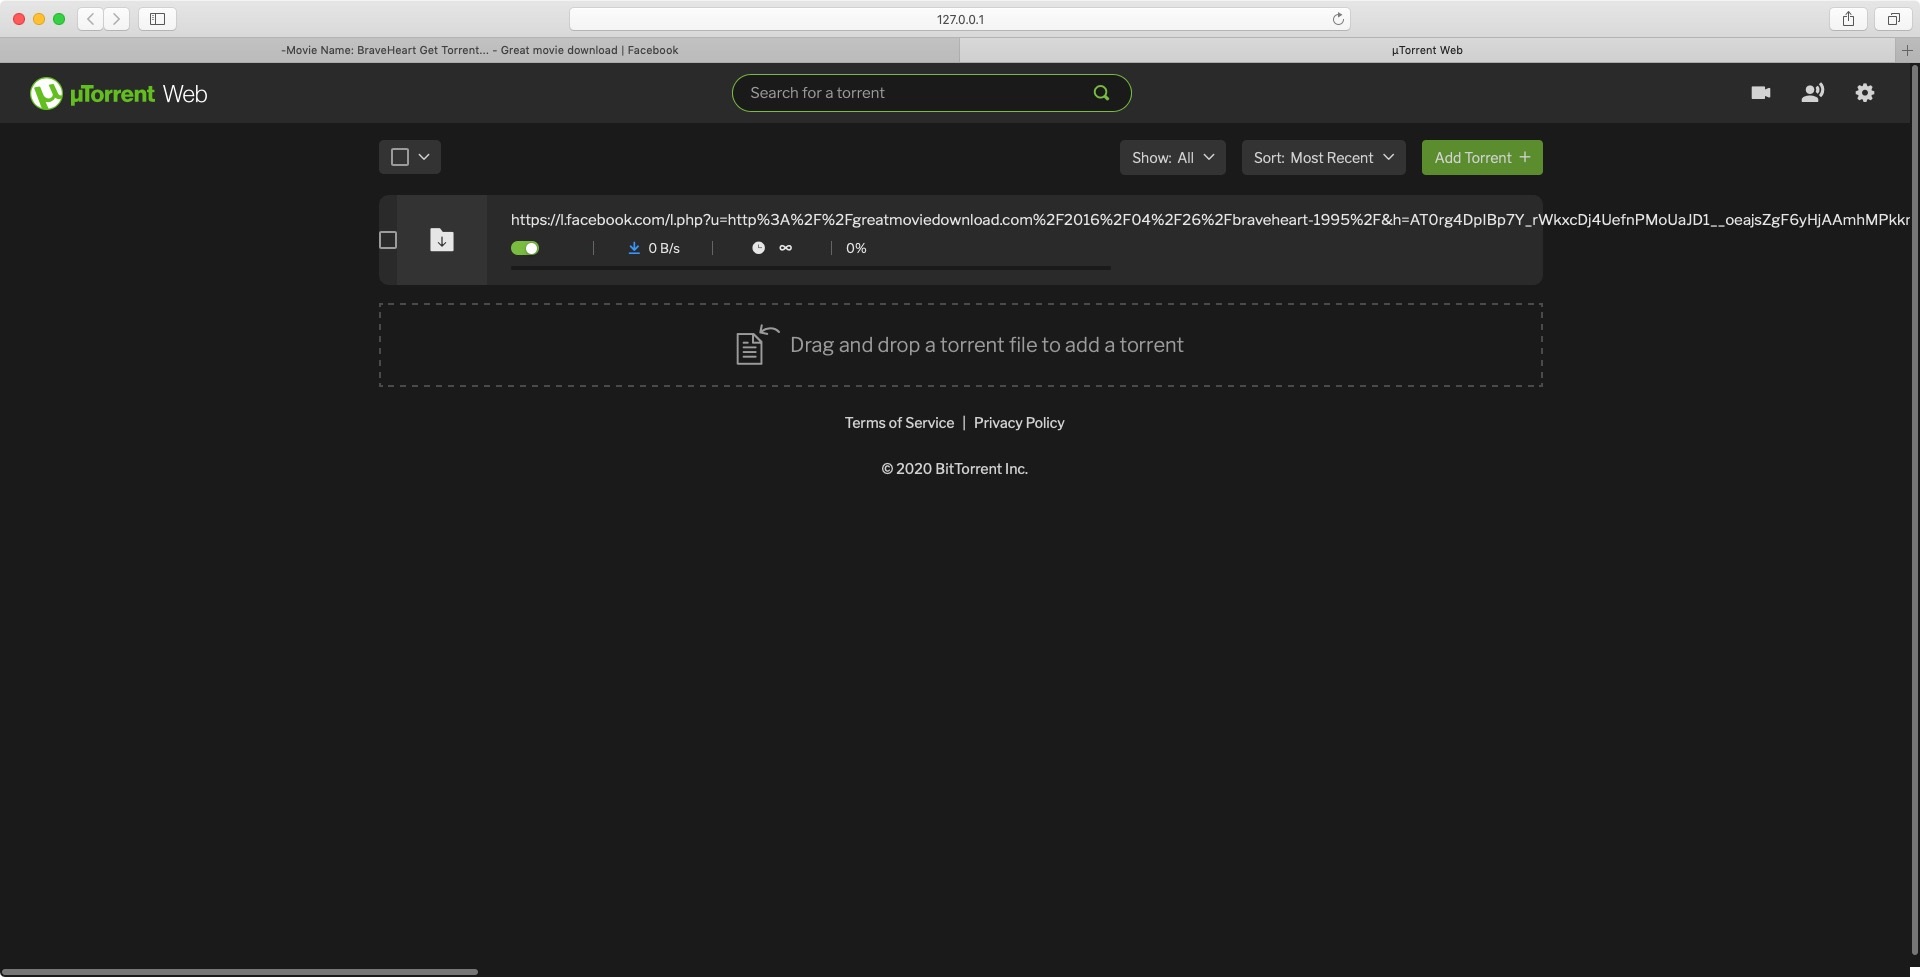 Download utorrent for mac 10.11